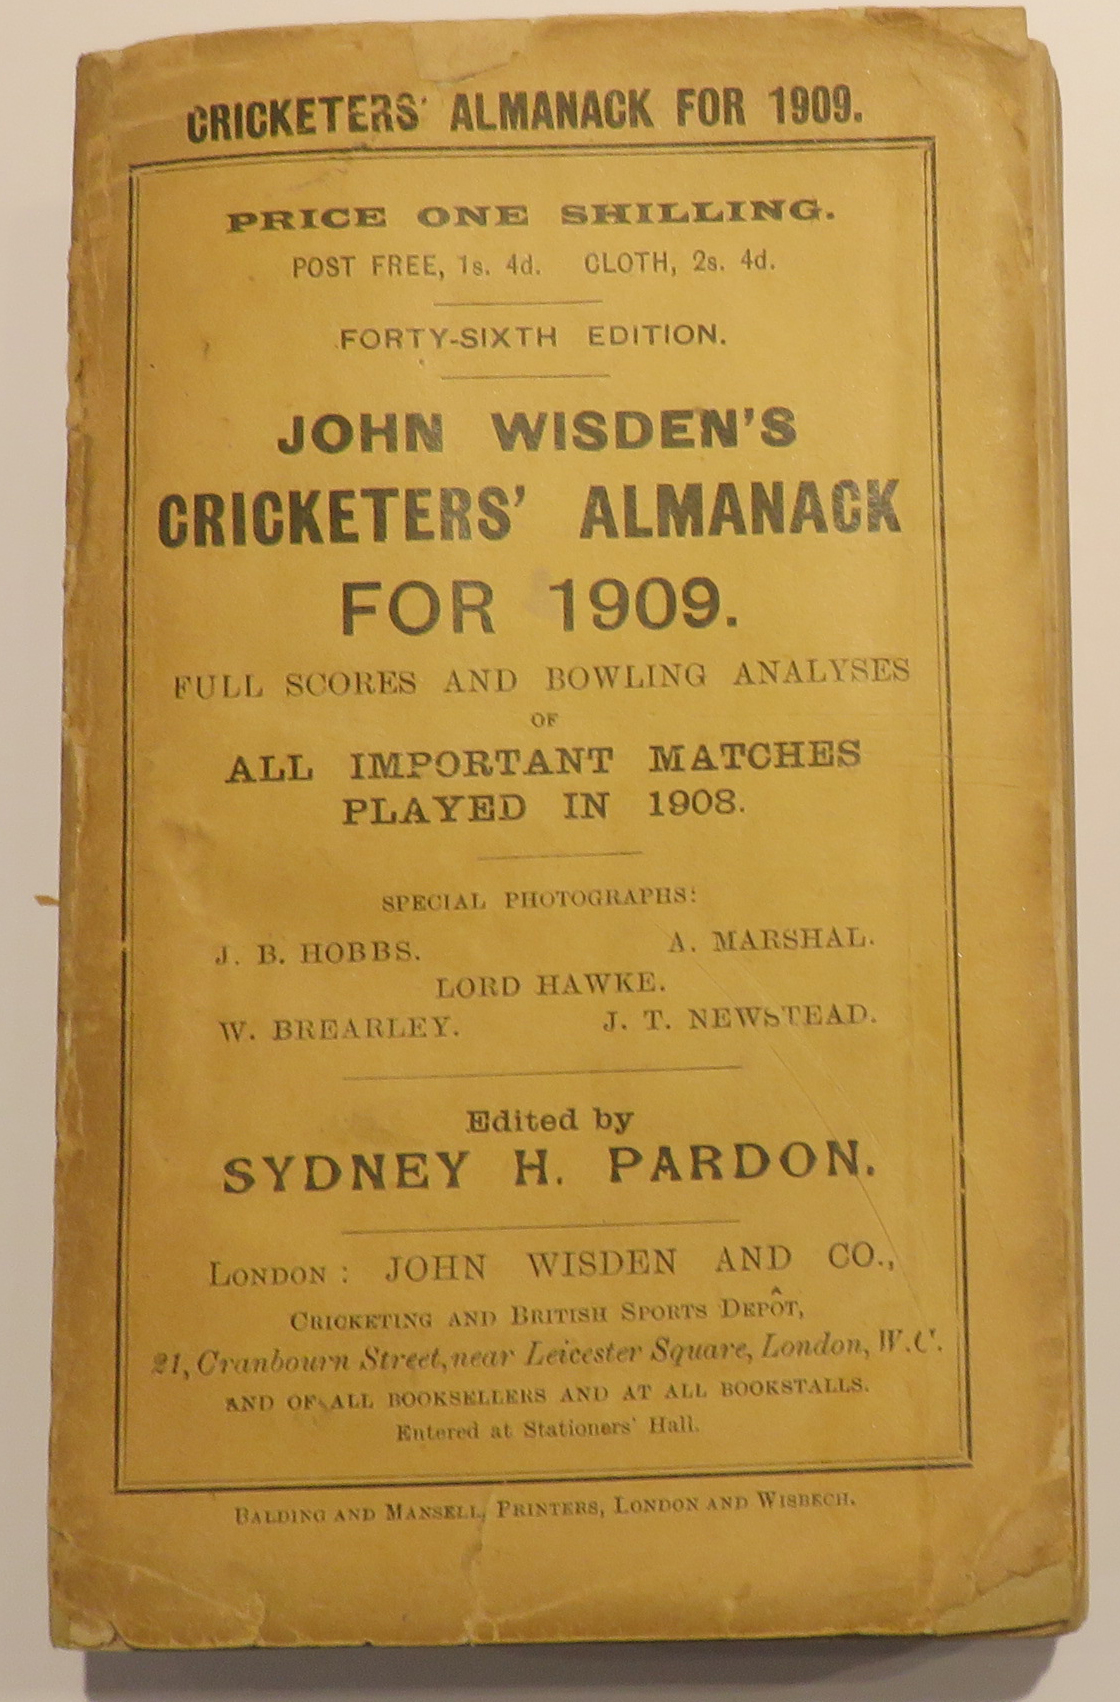 John Wisden's Cricketers' Almanack For 1909